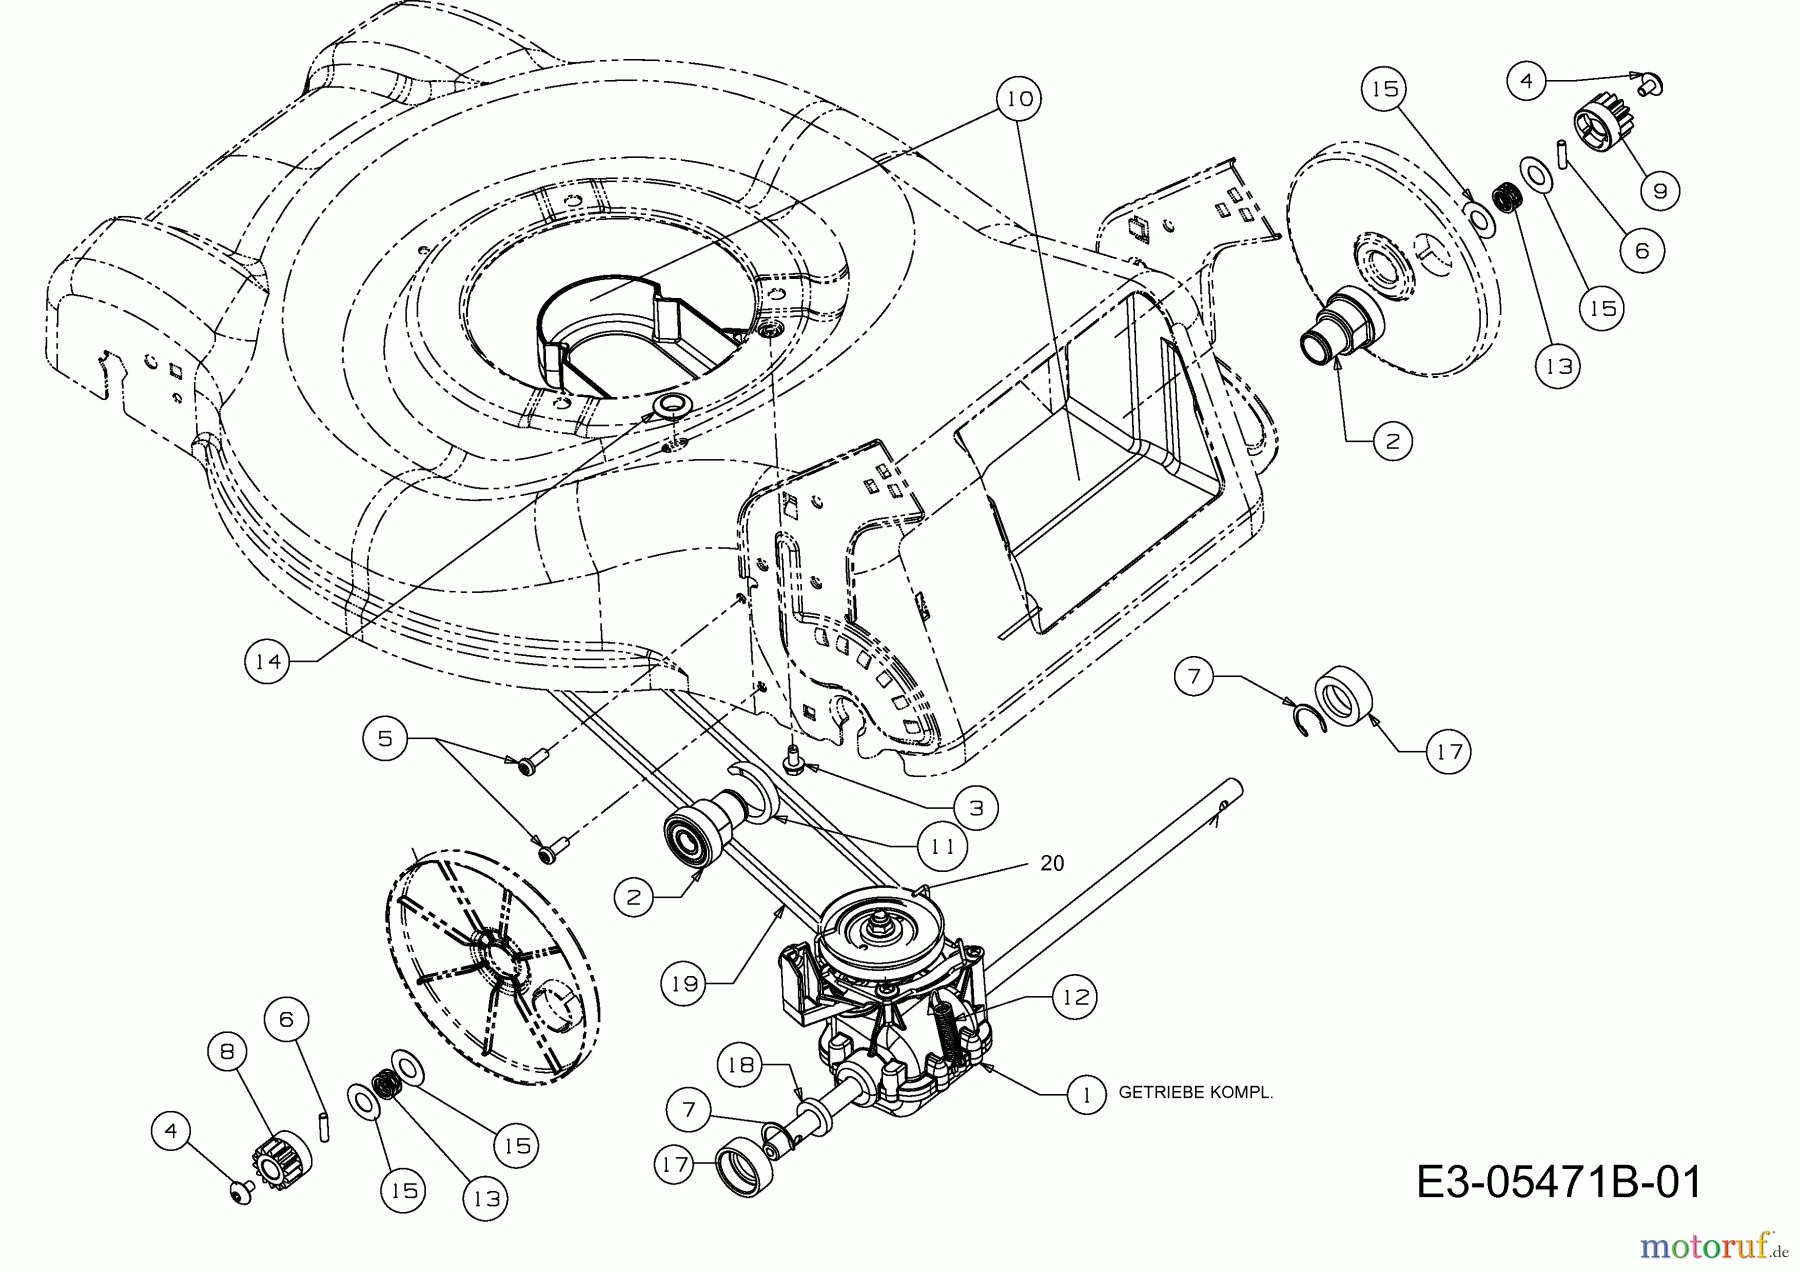  Plantiflor Motormäher mit Antrieb BMR 46 12E-J5JS601  (2012) Getriebe, Keilriemen